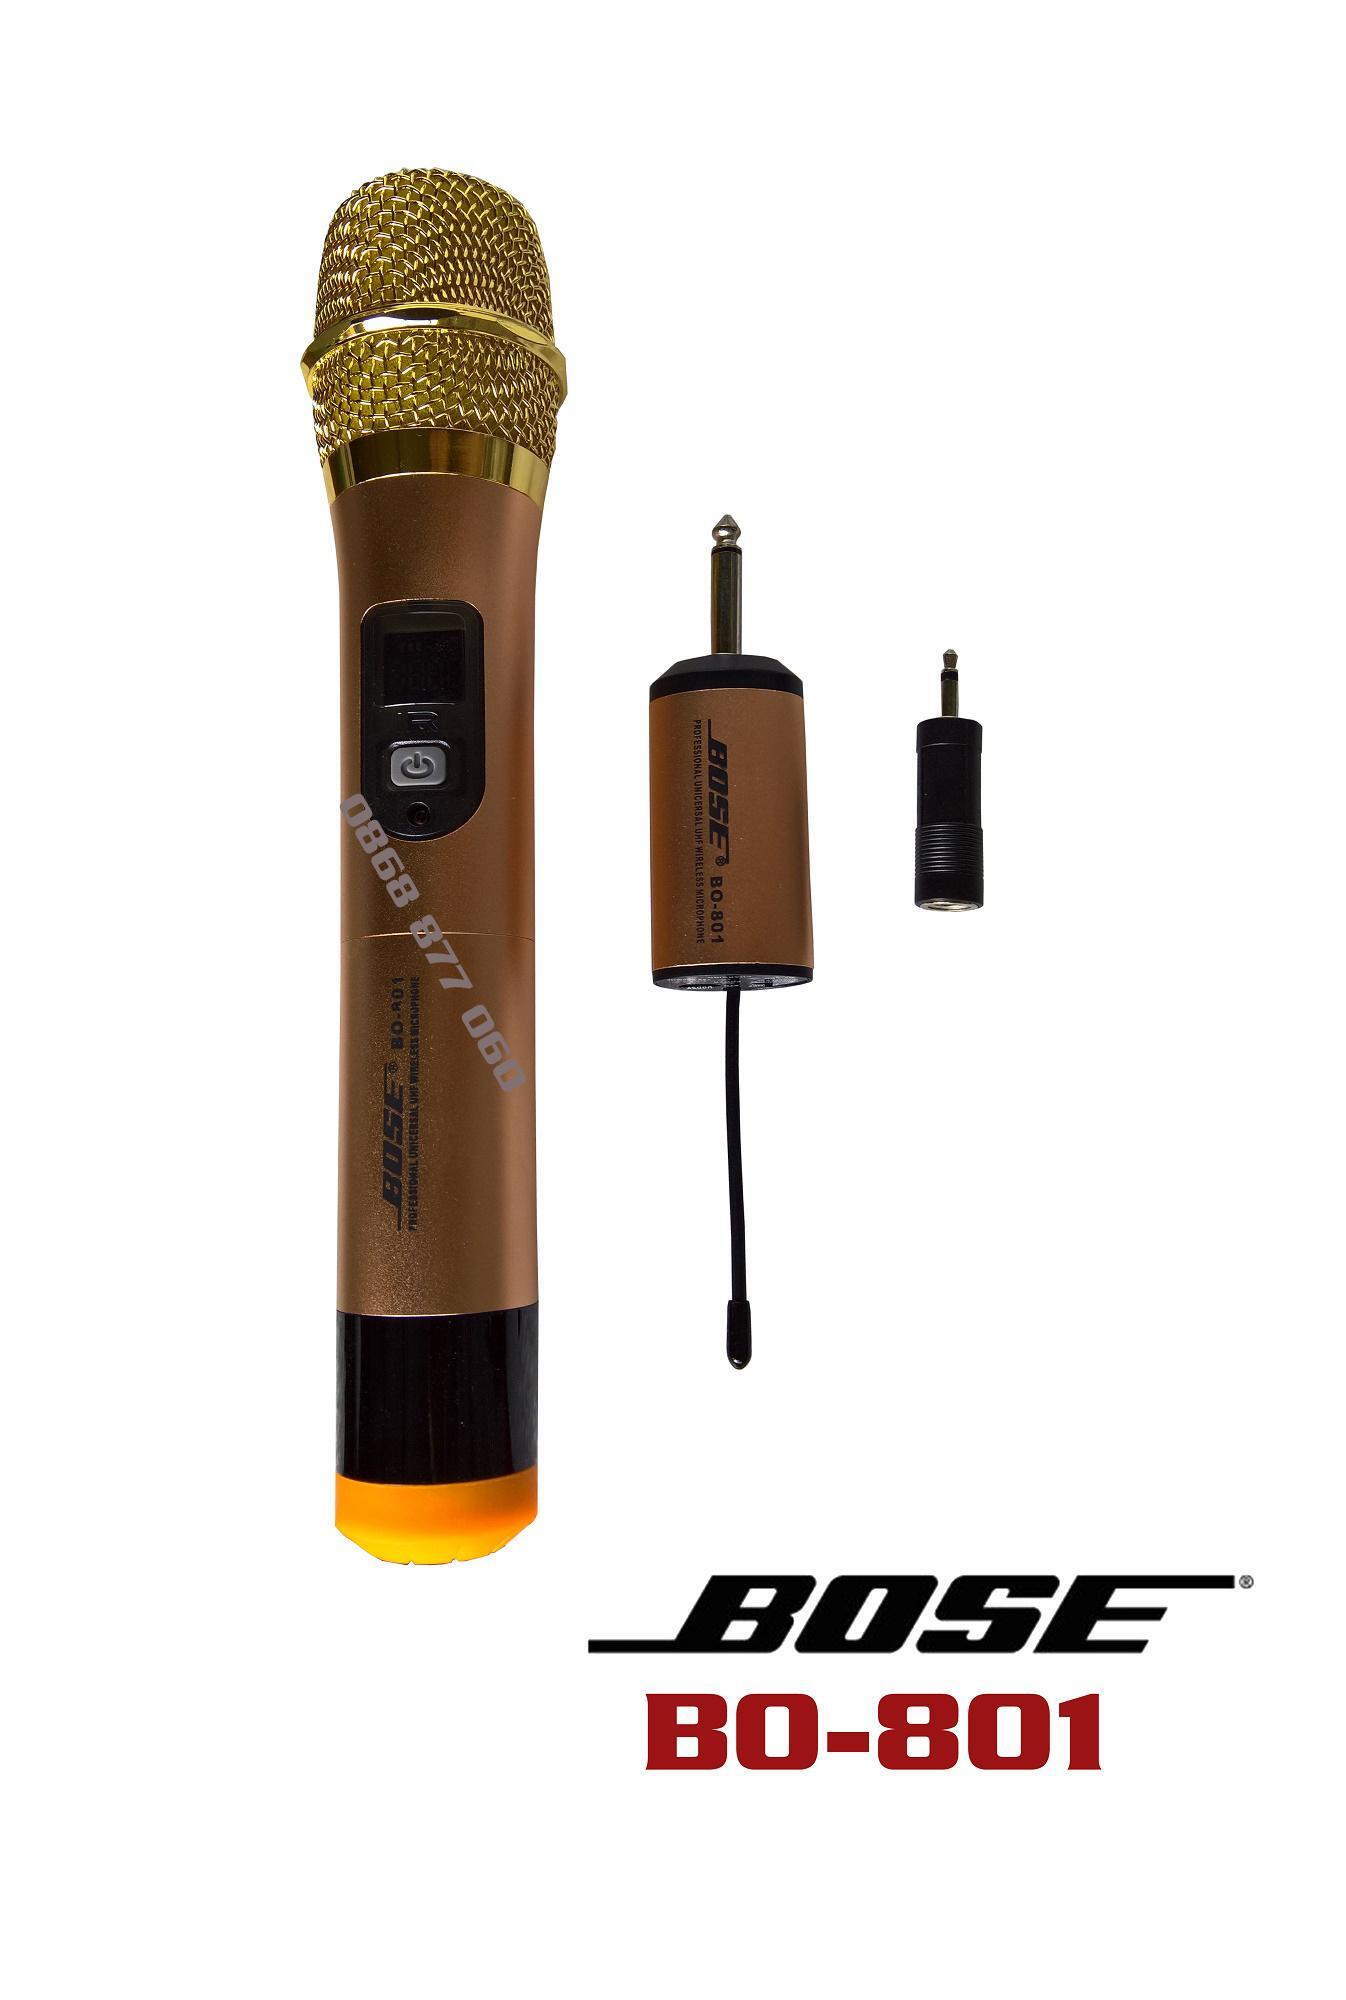 Micro Không Dây Bose BS-801